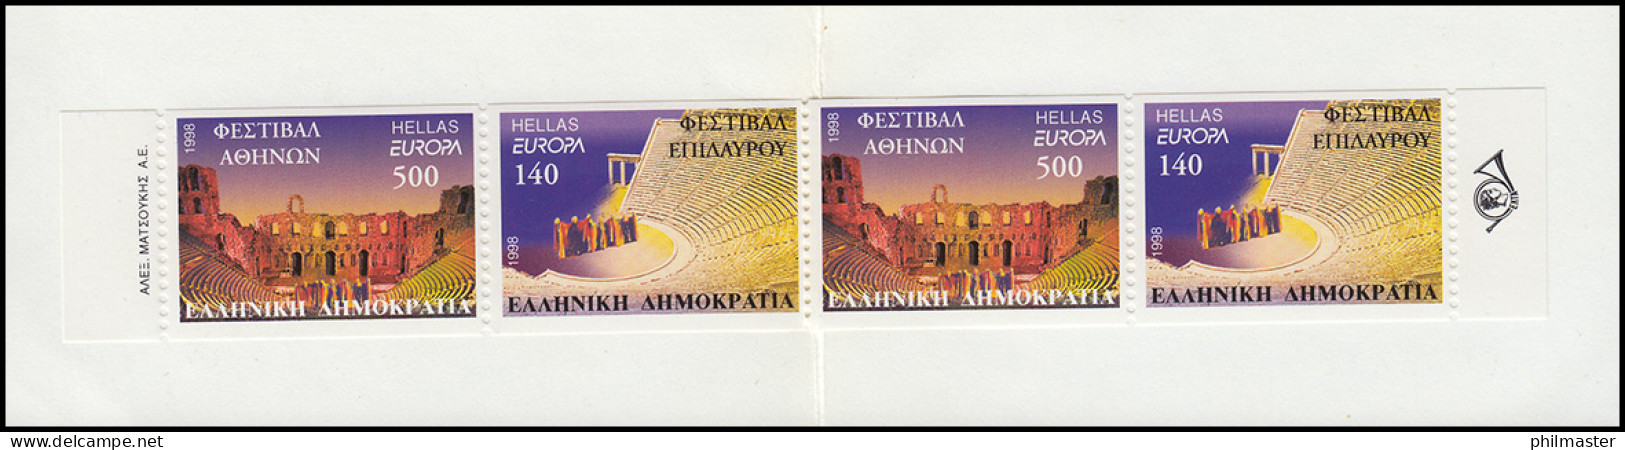 Griechenland Markenheftchen 21 Europa 1998, Postfrisch ** / MNH - Carnets